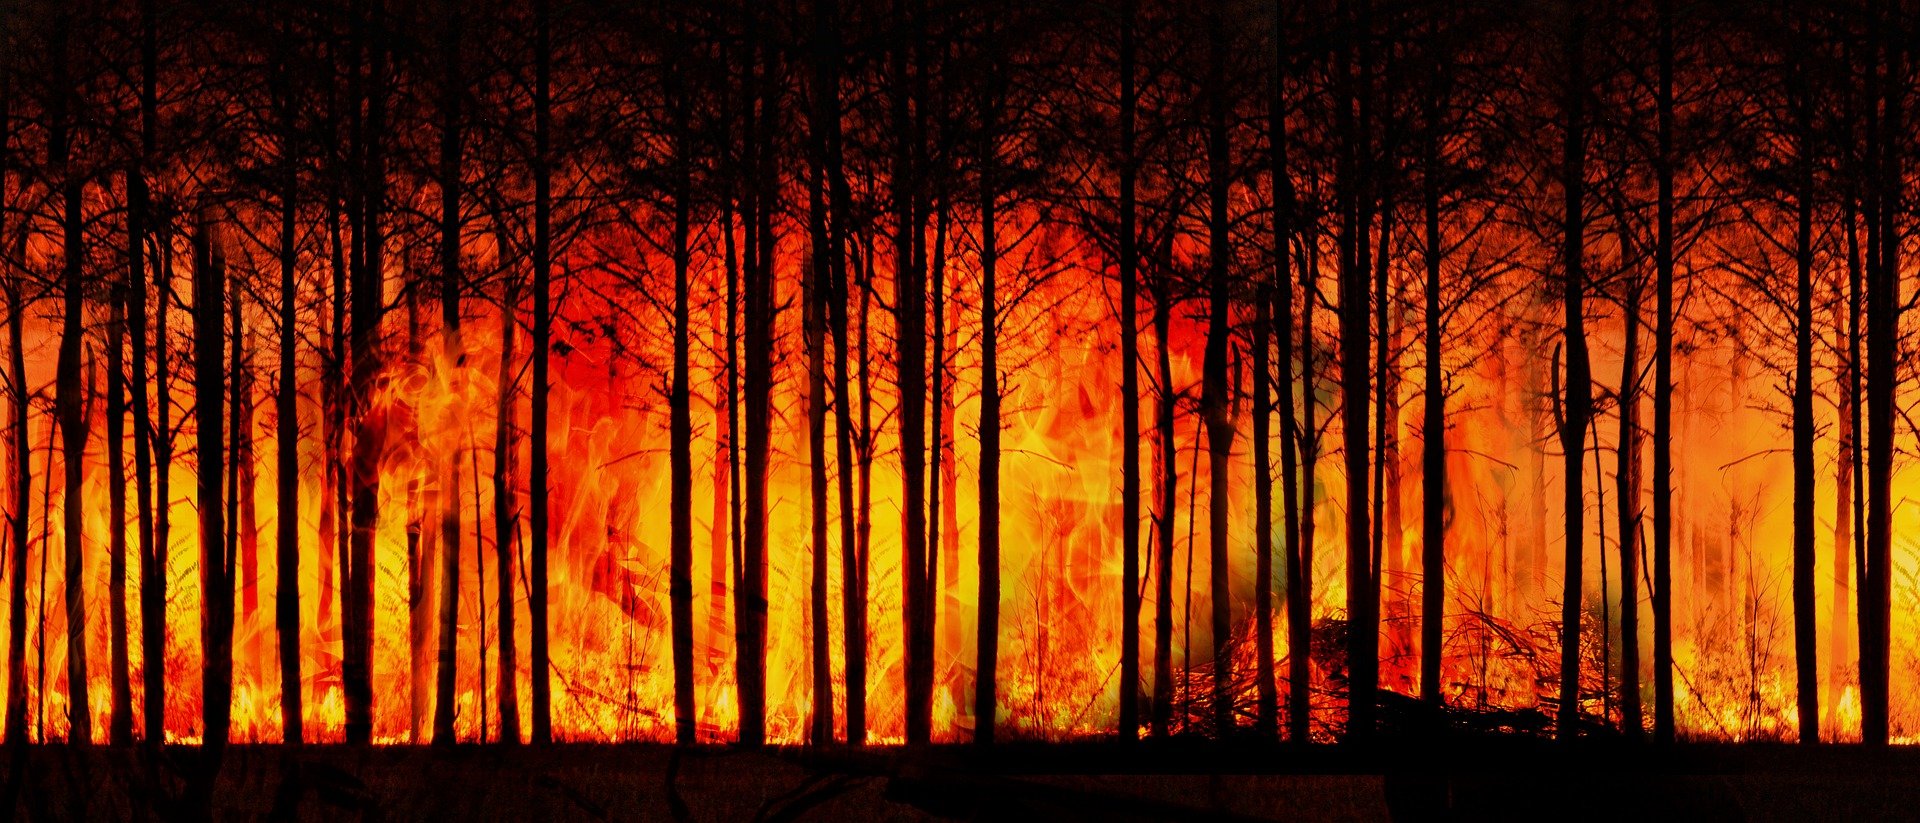 Waldbrandheld von @Fire aus Osnabrück